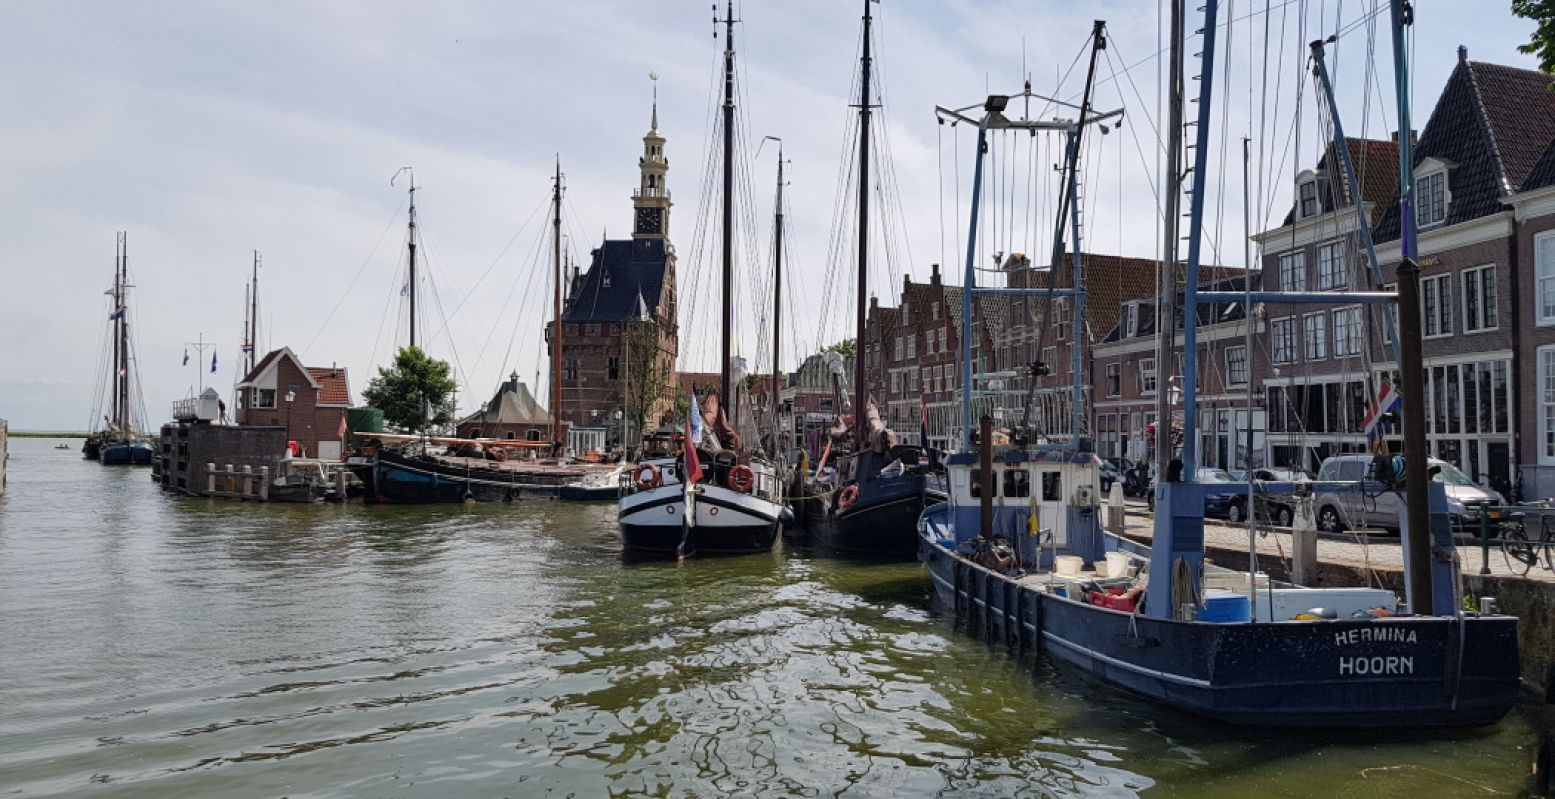 De haven van het oude stadje Hoorn in West-Friesland. Foto: DagjeWeg.NL, Tonny van Oosten.